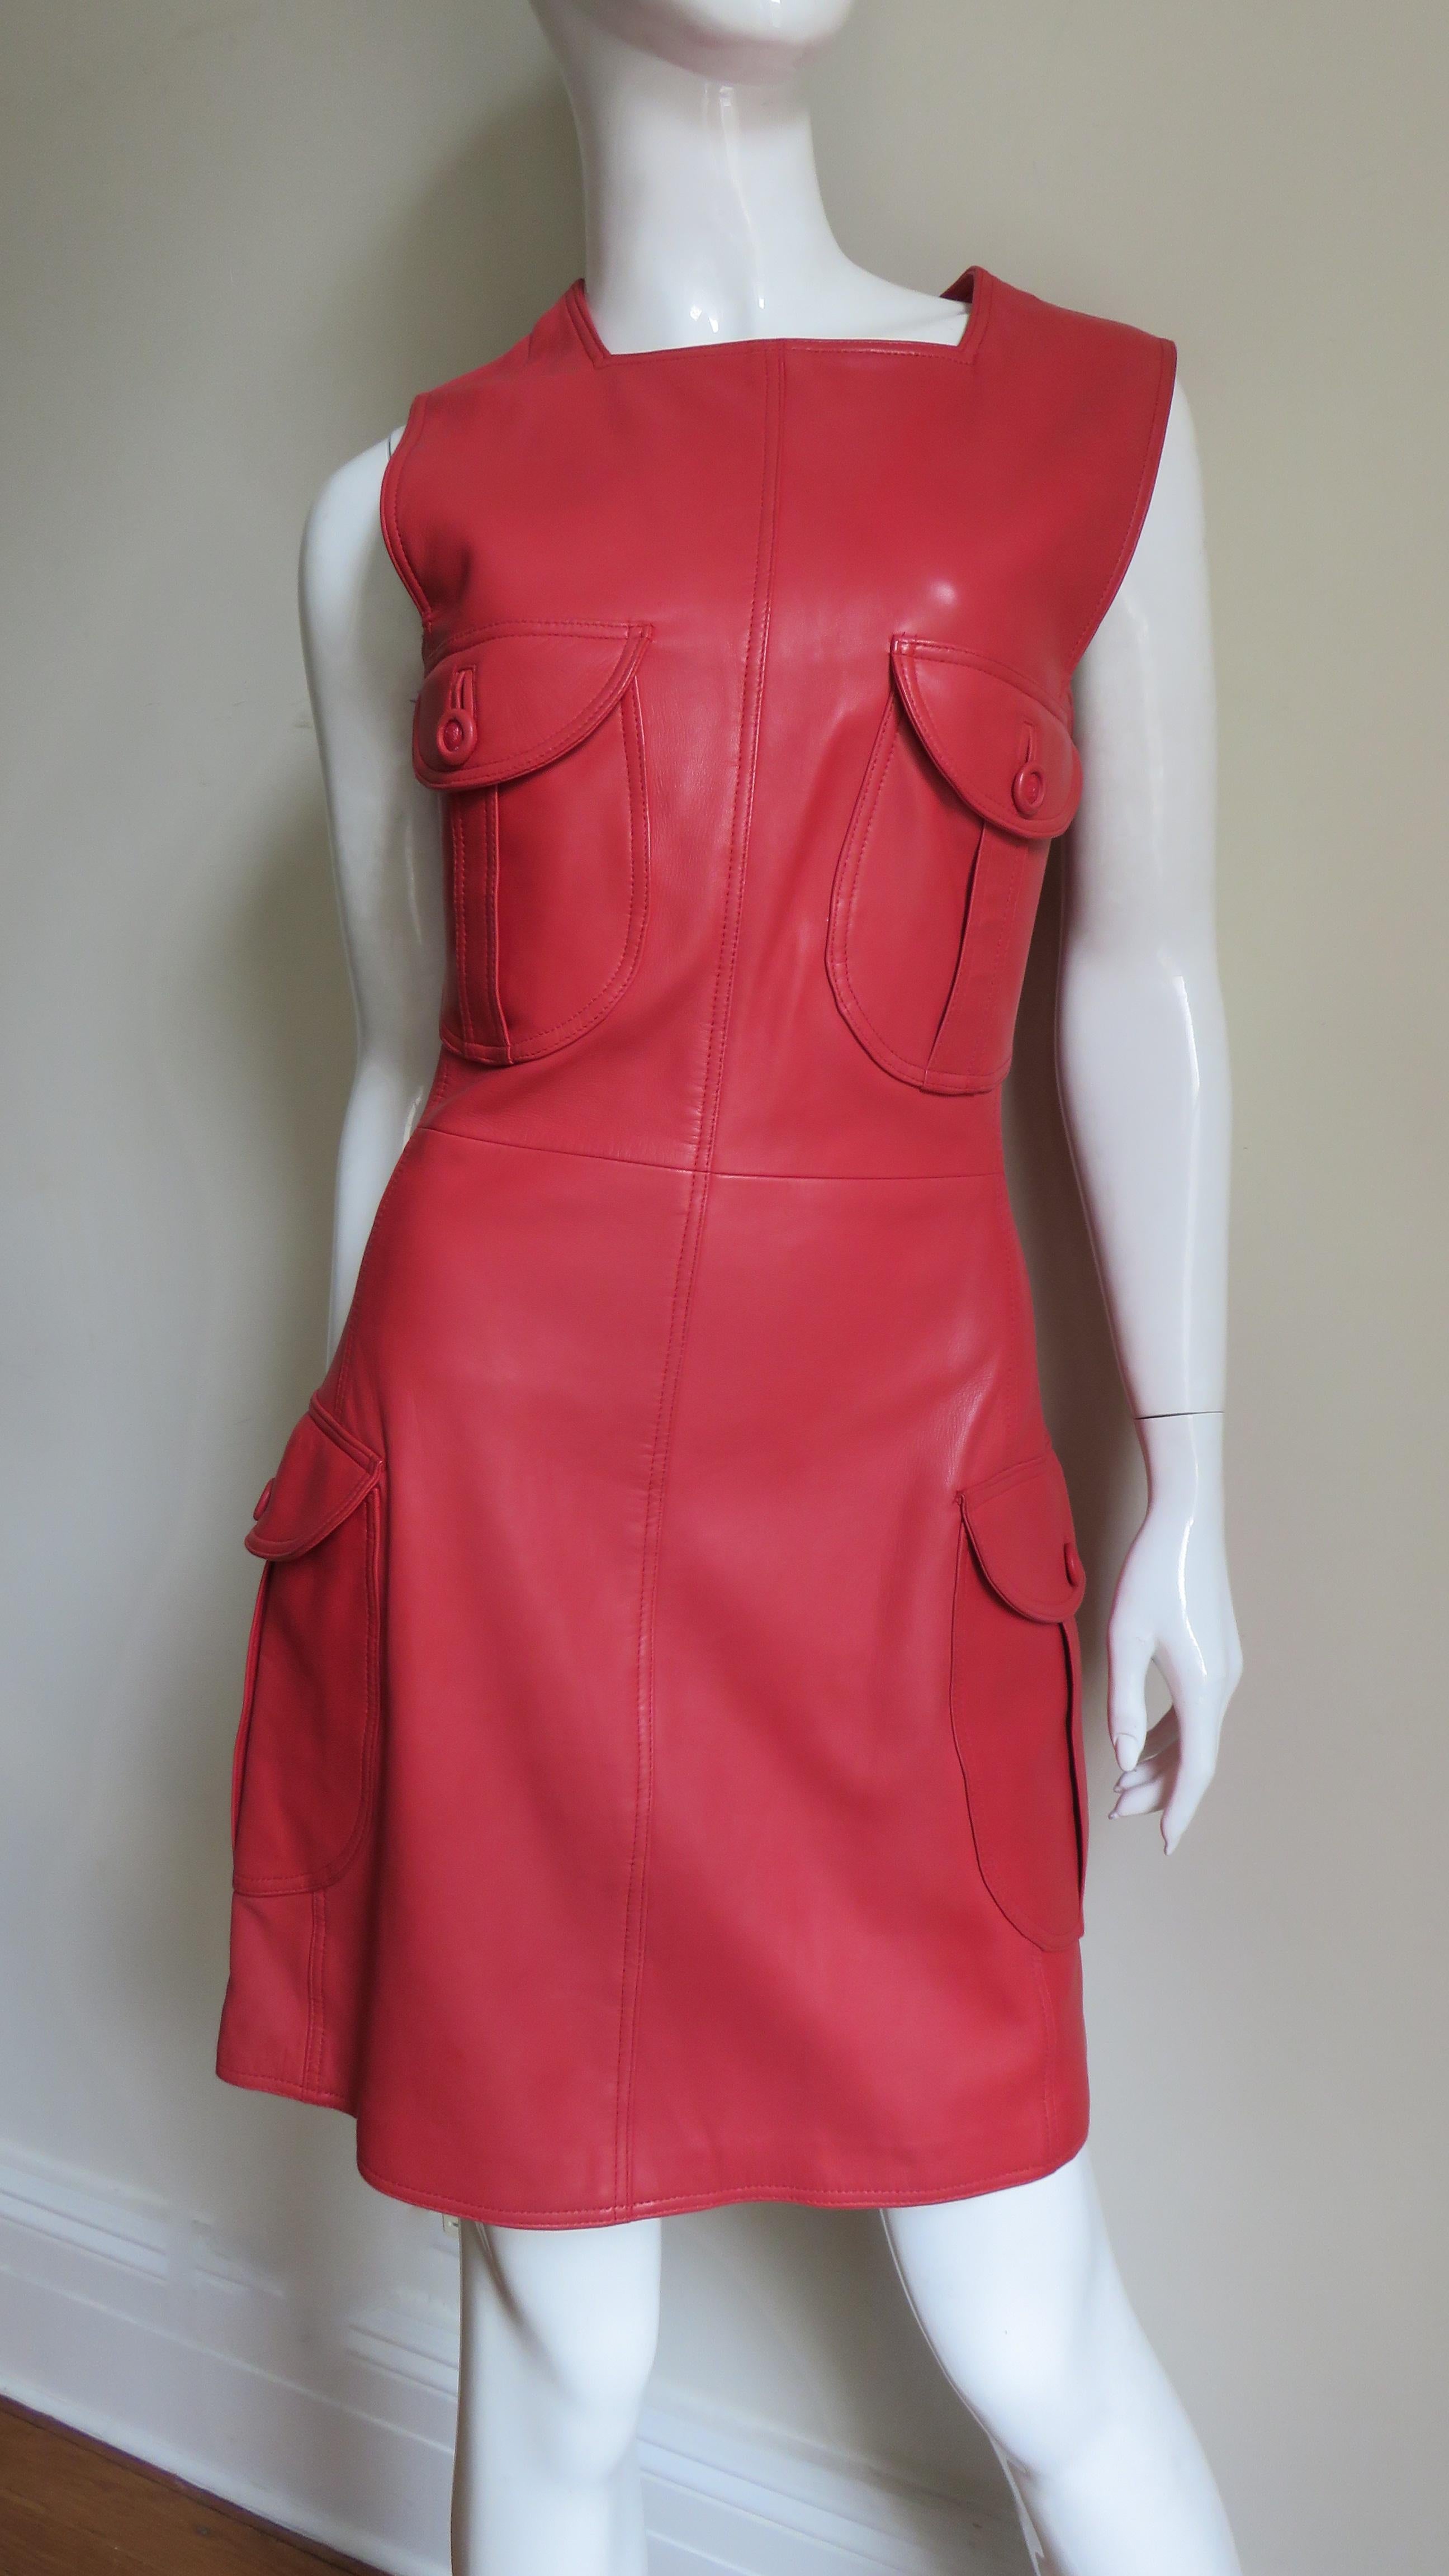 Une fabuleuse robe en cuir rouge tomate de Gianni Versace.  Elle est sans manches, avec une encolure et des emmanchures carrées et des poches plaquées à rabat, chacune avec un grand bouton et une boutonnière reliée, 2 sur le corsage avant et 2 sur